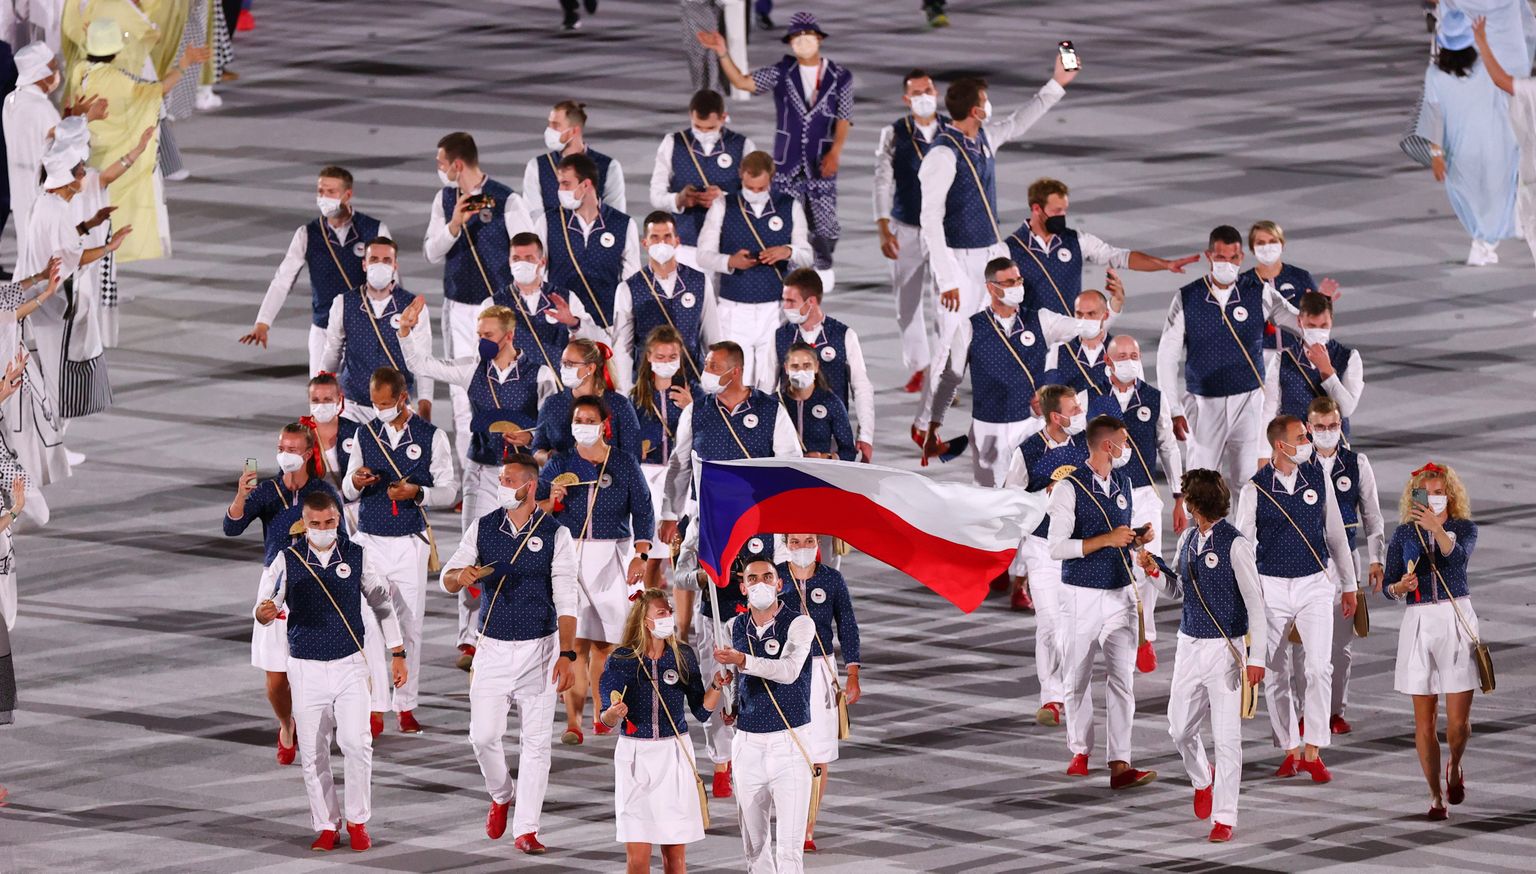 Čehijas olimpieši 2021. gada Tokijas olimpisko spēļu atklāšanas ceremonijā